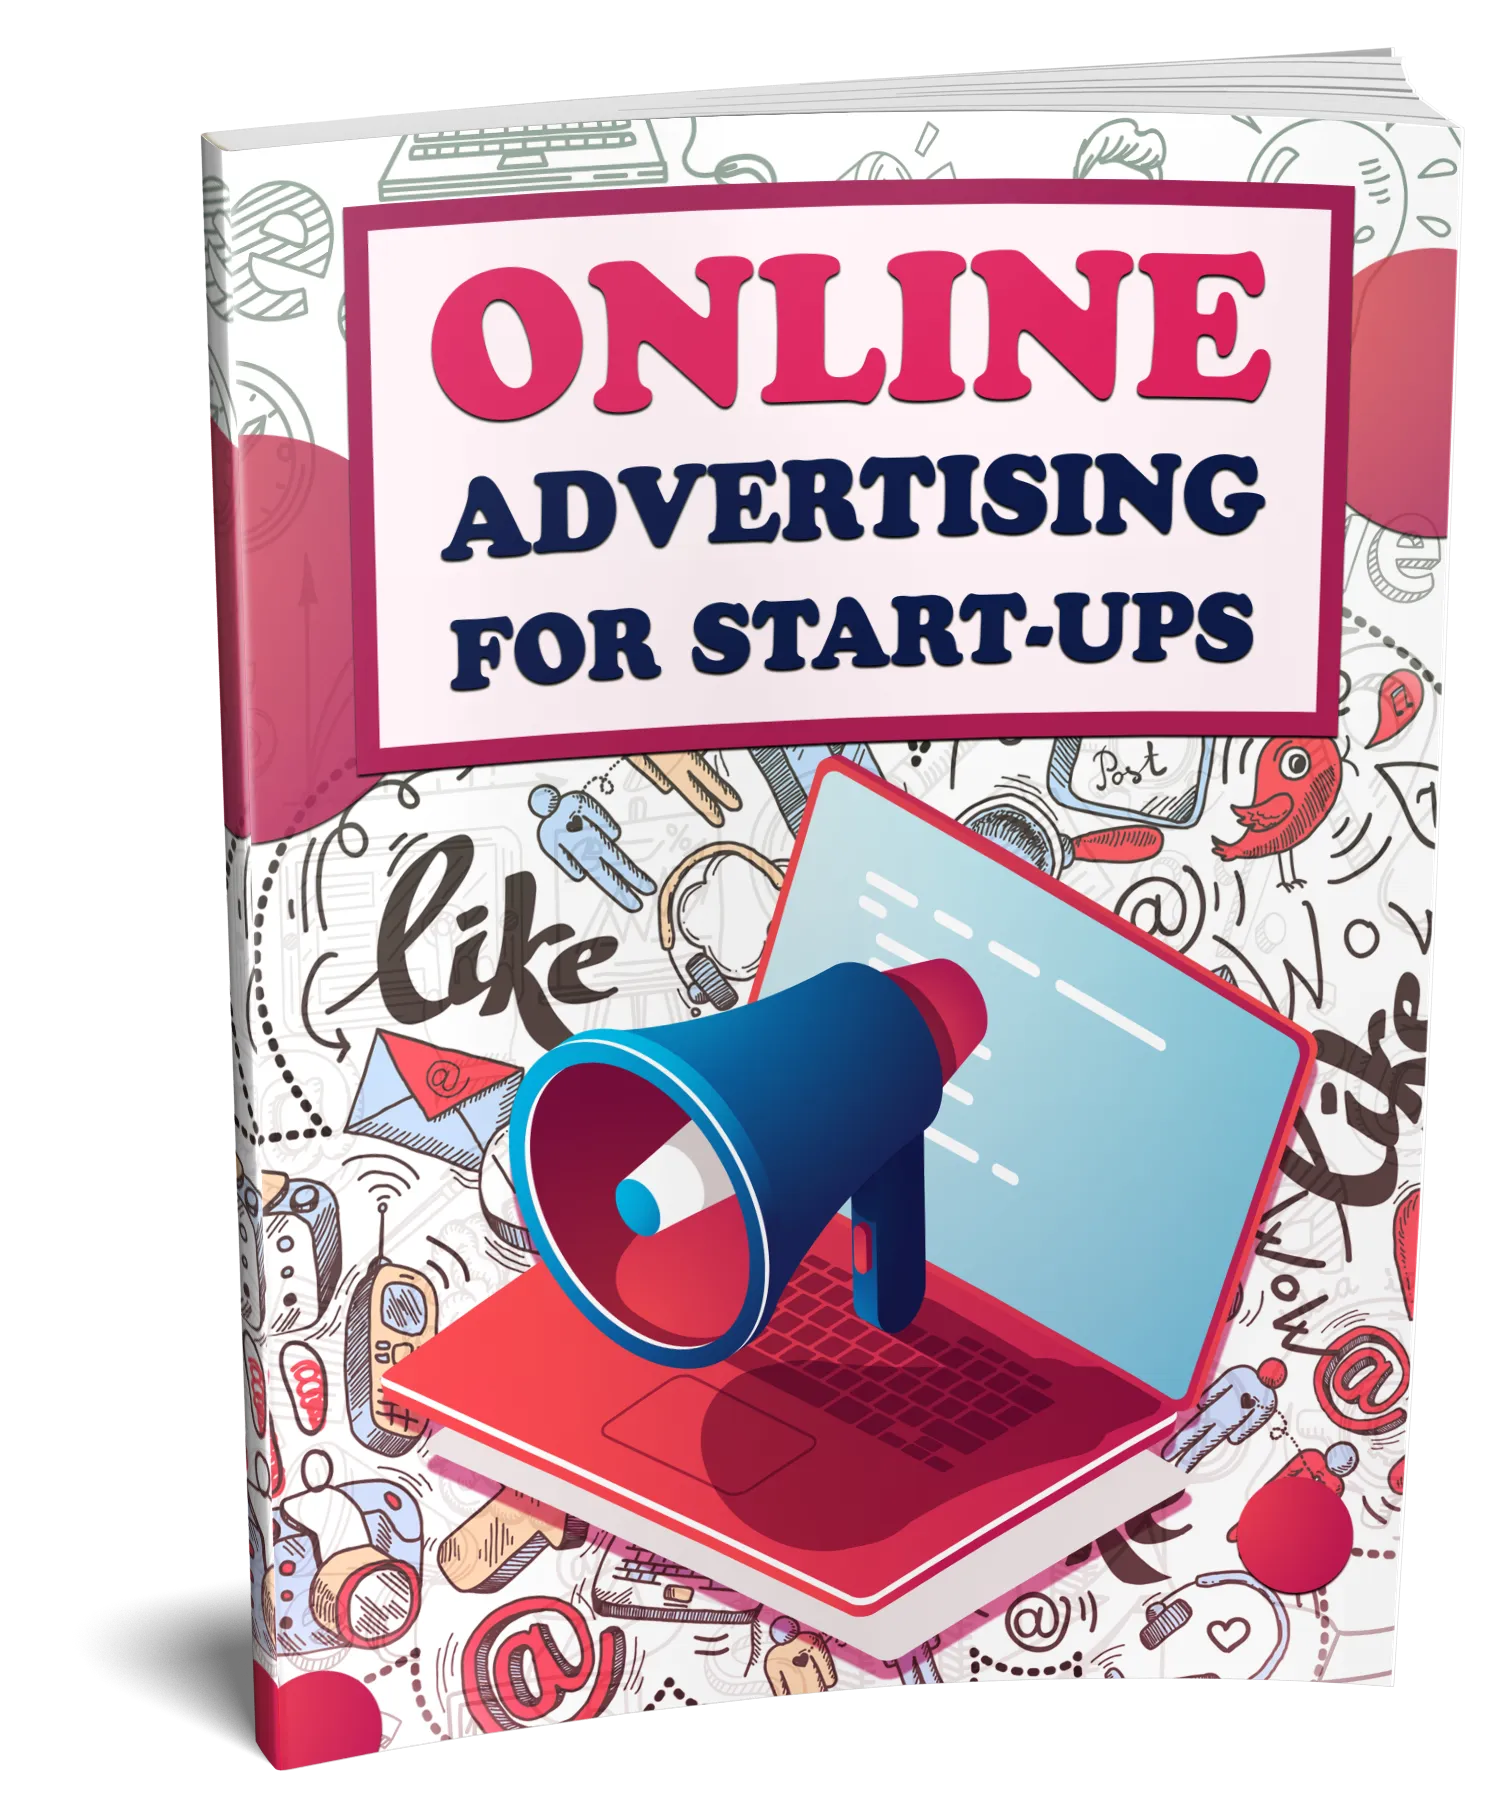 eBook online advertising